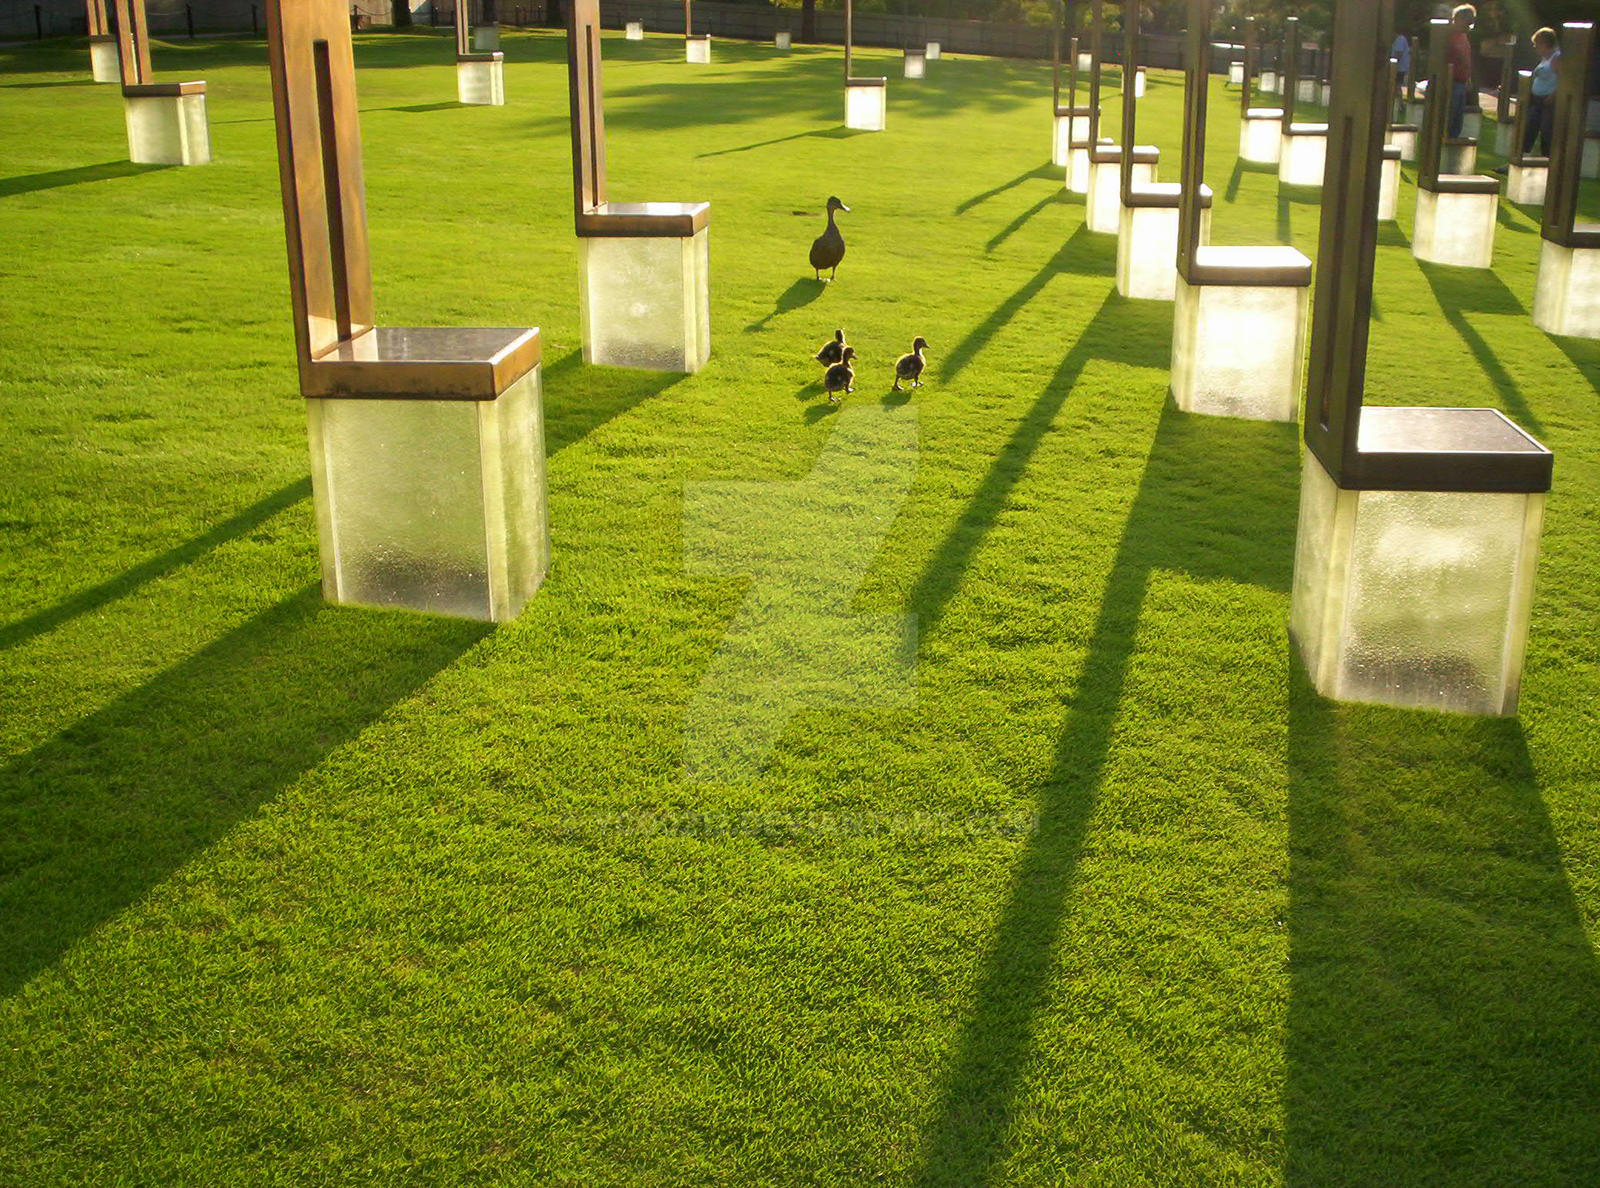 Ducks at The OKC Memorial